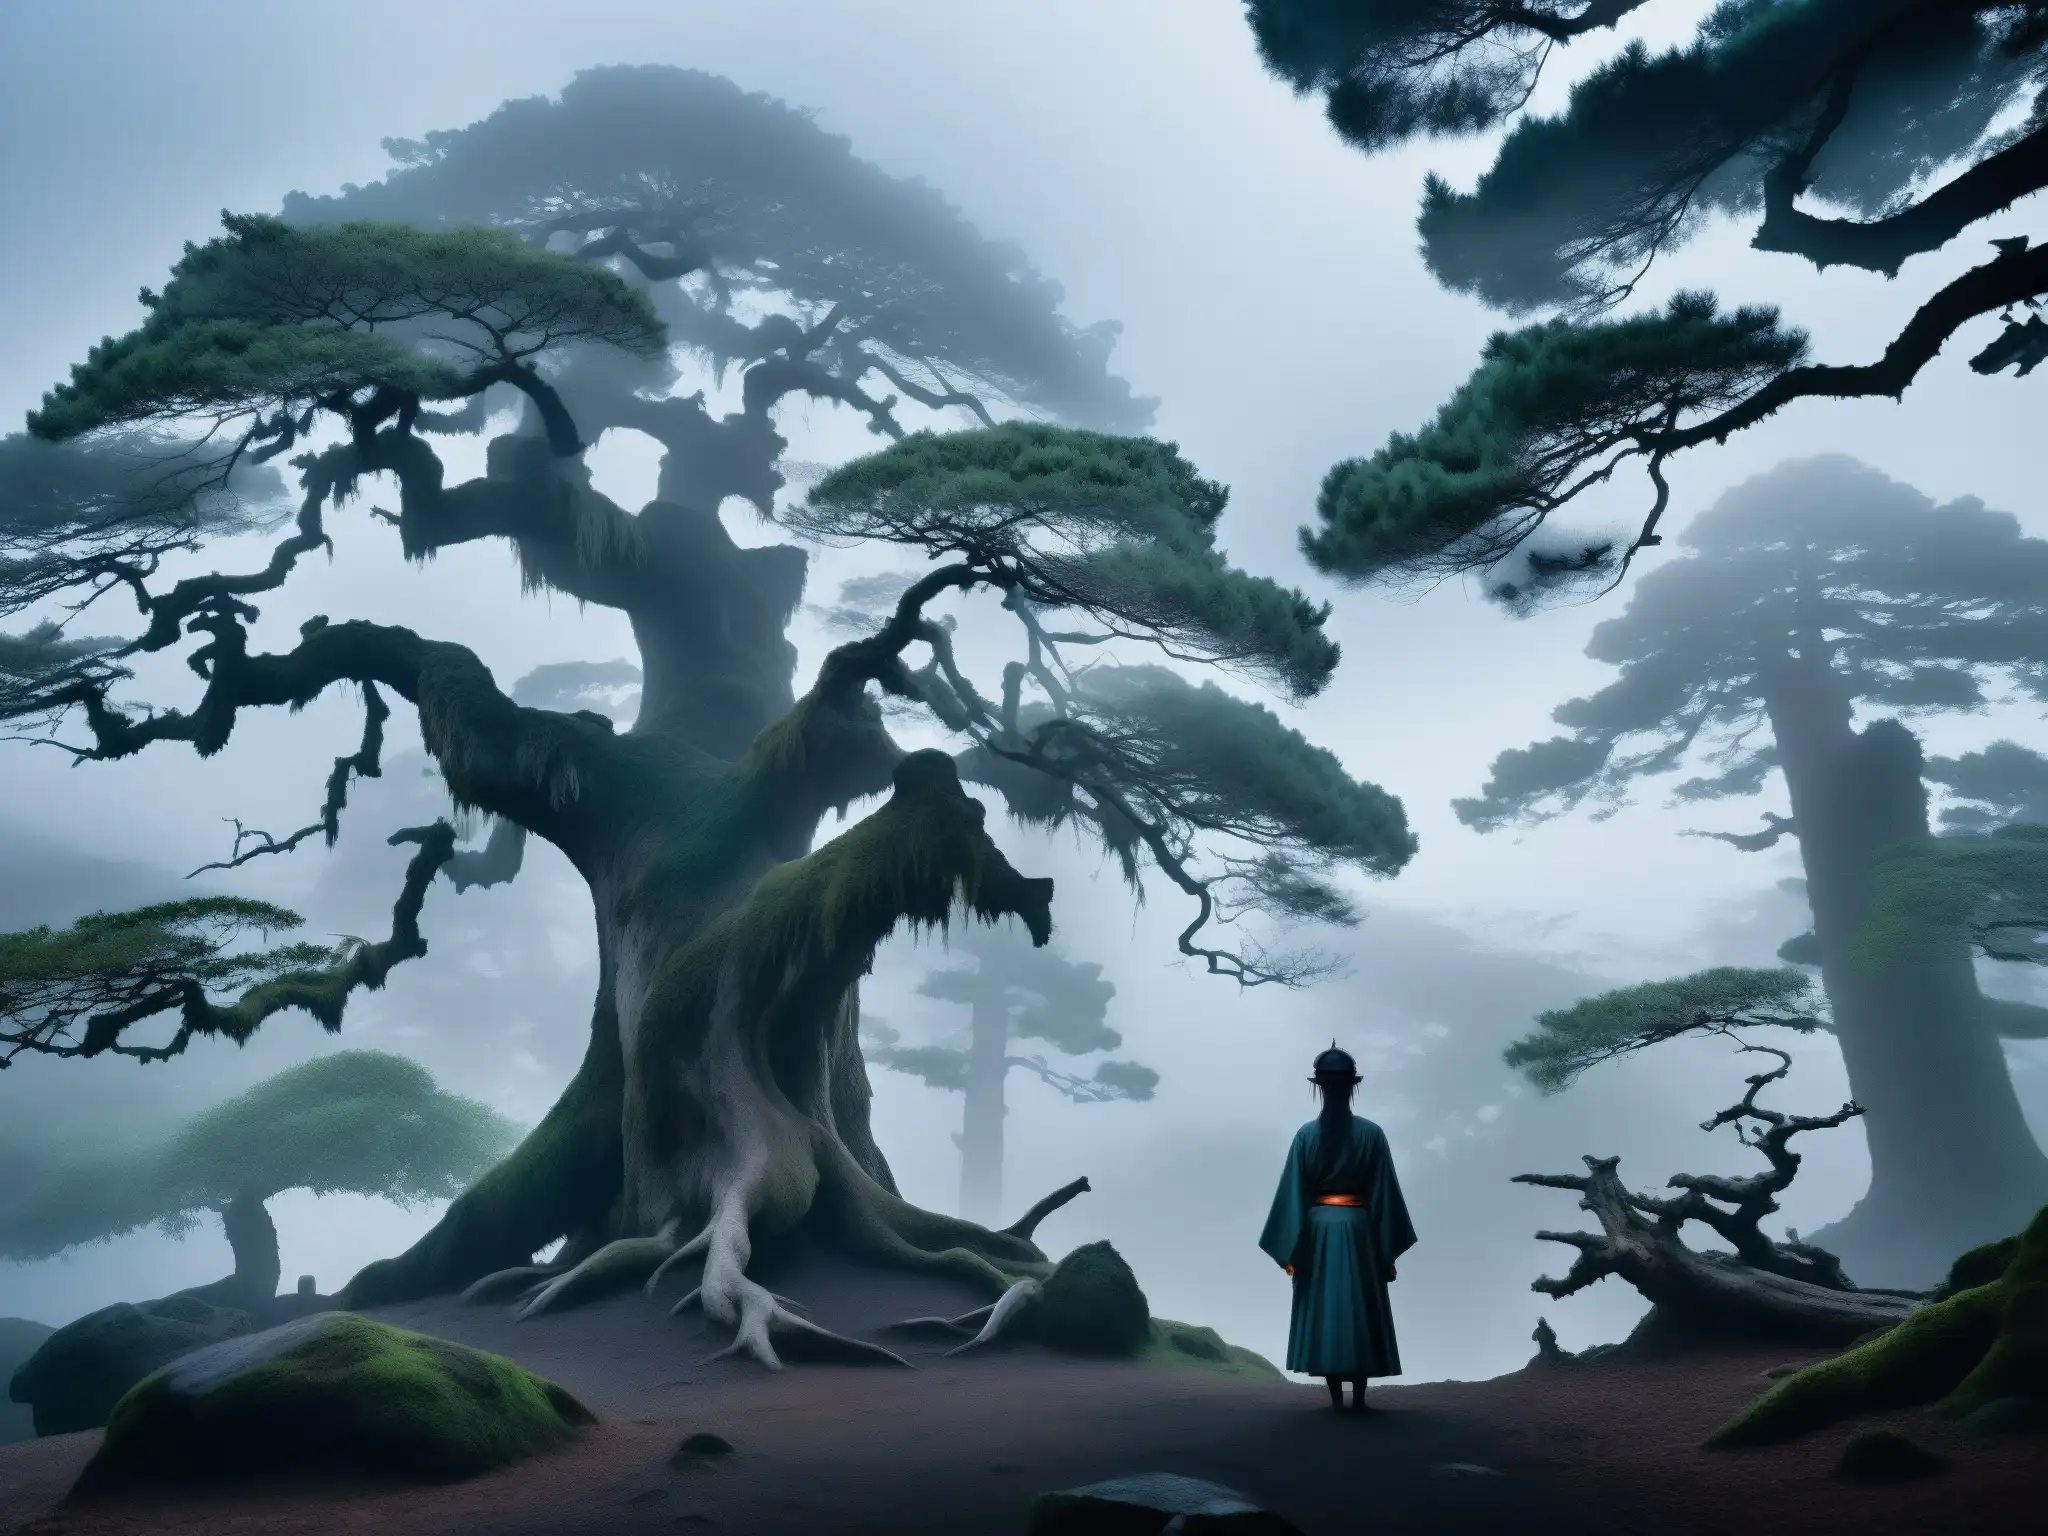 Un bosque misterioso al anochecer con un espectro japonés entre la niebla